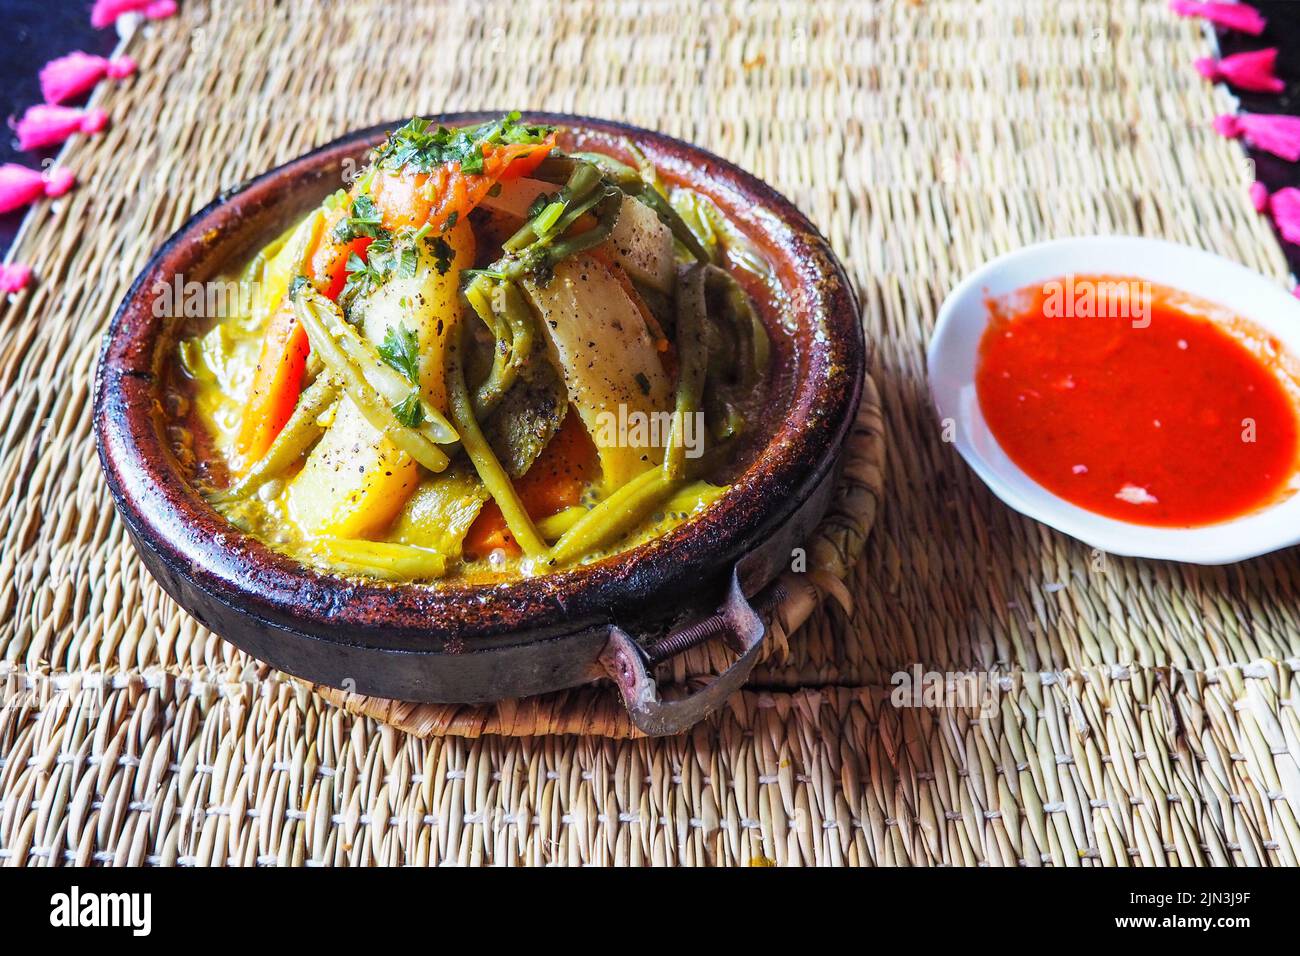 Tajine o tagine - piatto tradizionale berbero servito in terraglie presso il tipico ristorante di strada Marocchino, primo piano Foto Stock